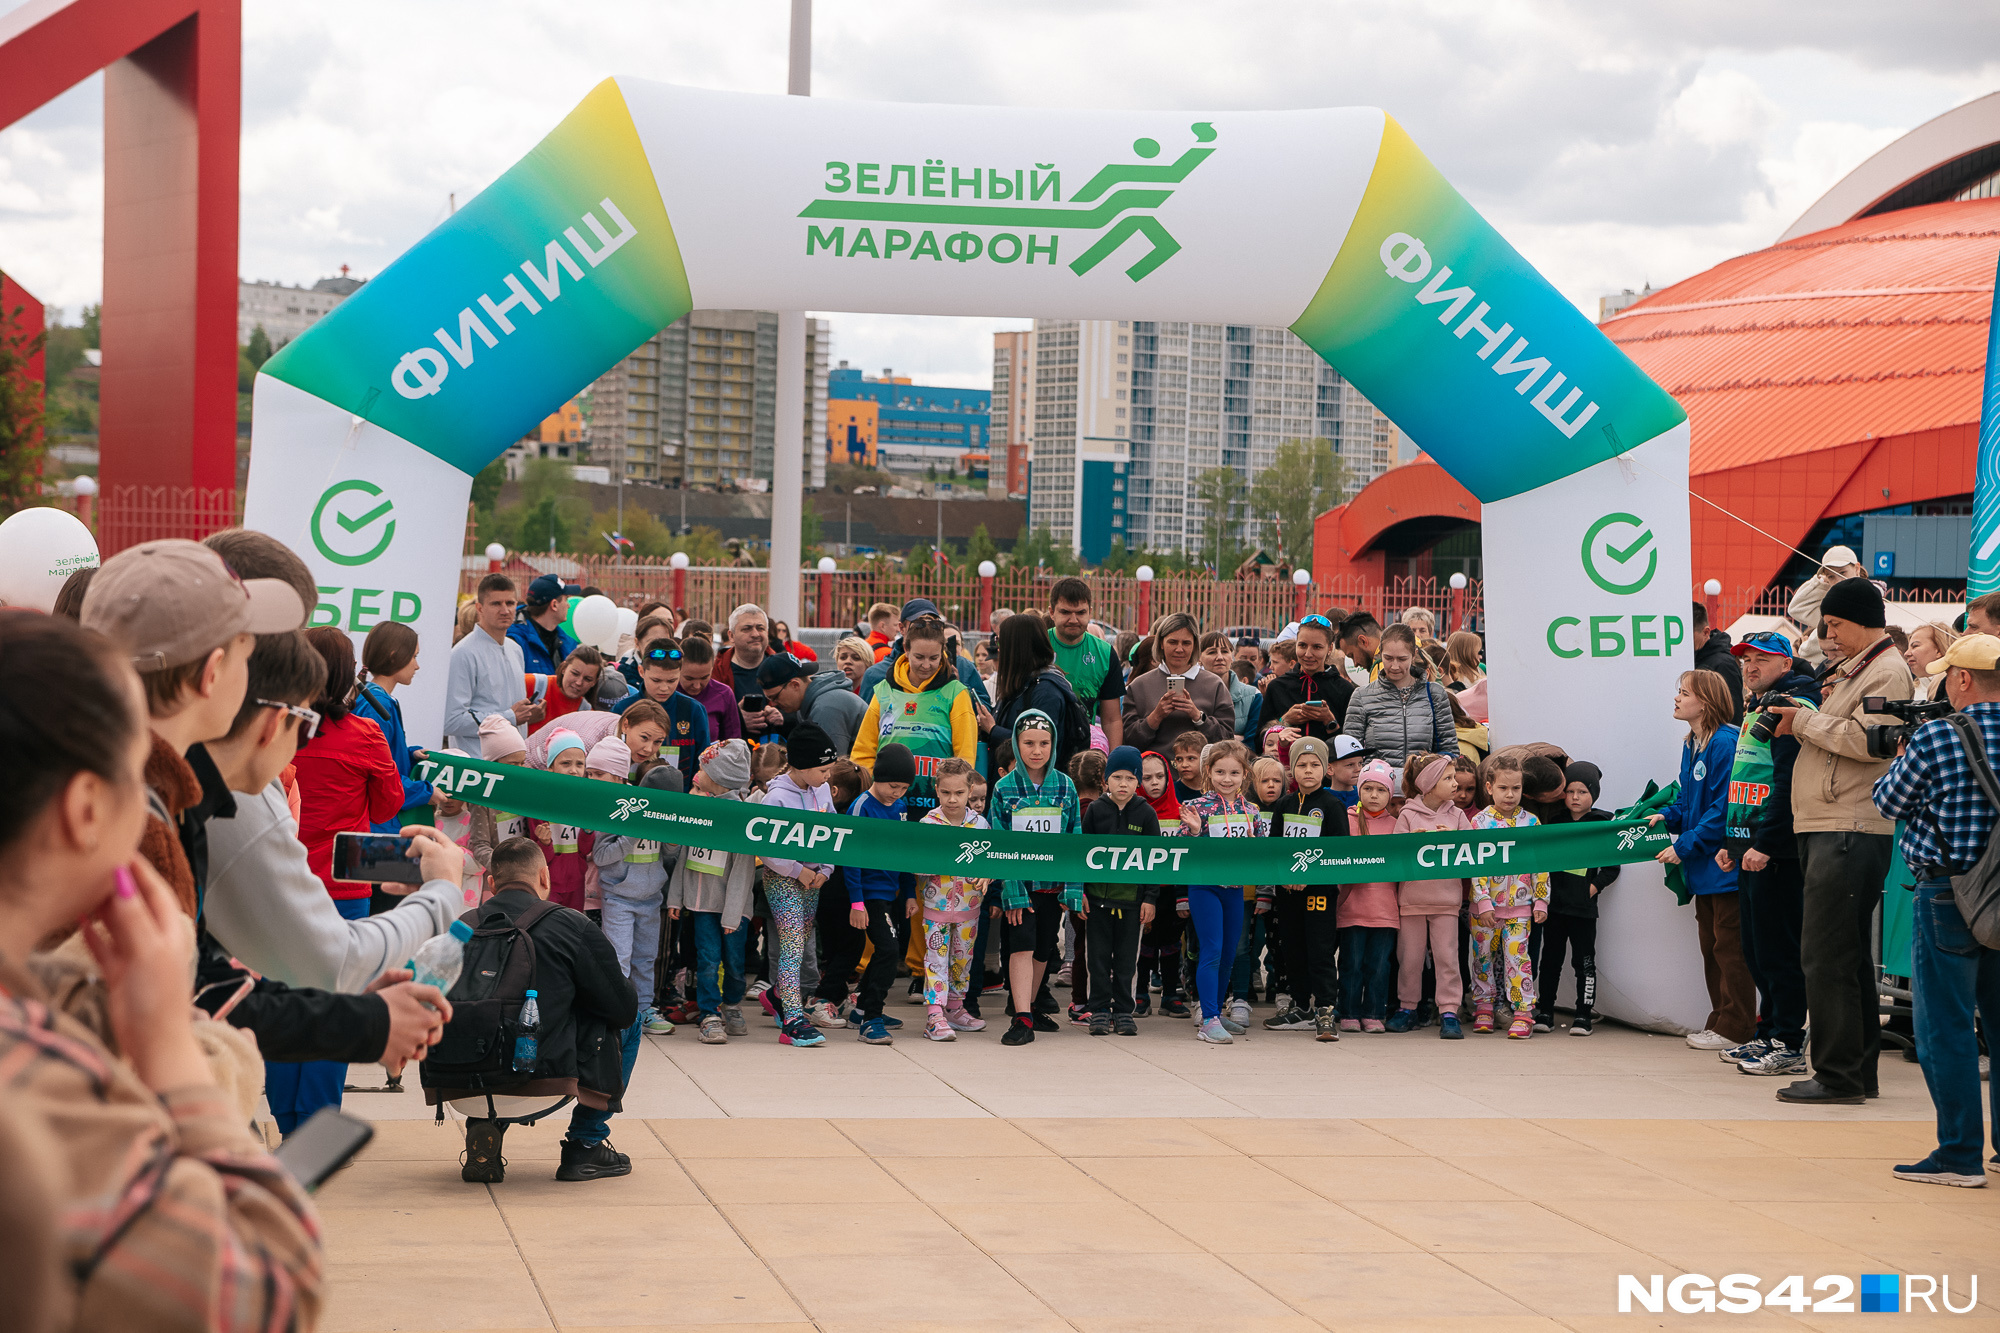 Пробежать и обняться с Чебурашкой: как прошел «Зеленый марафон» в Кемерове